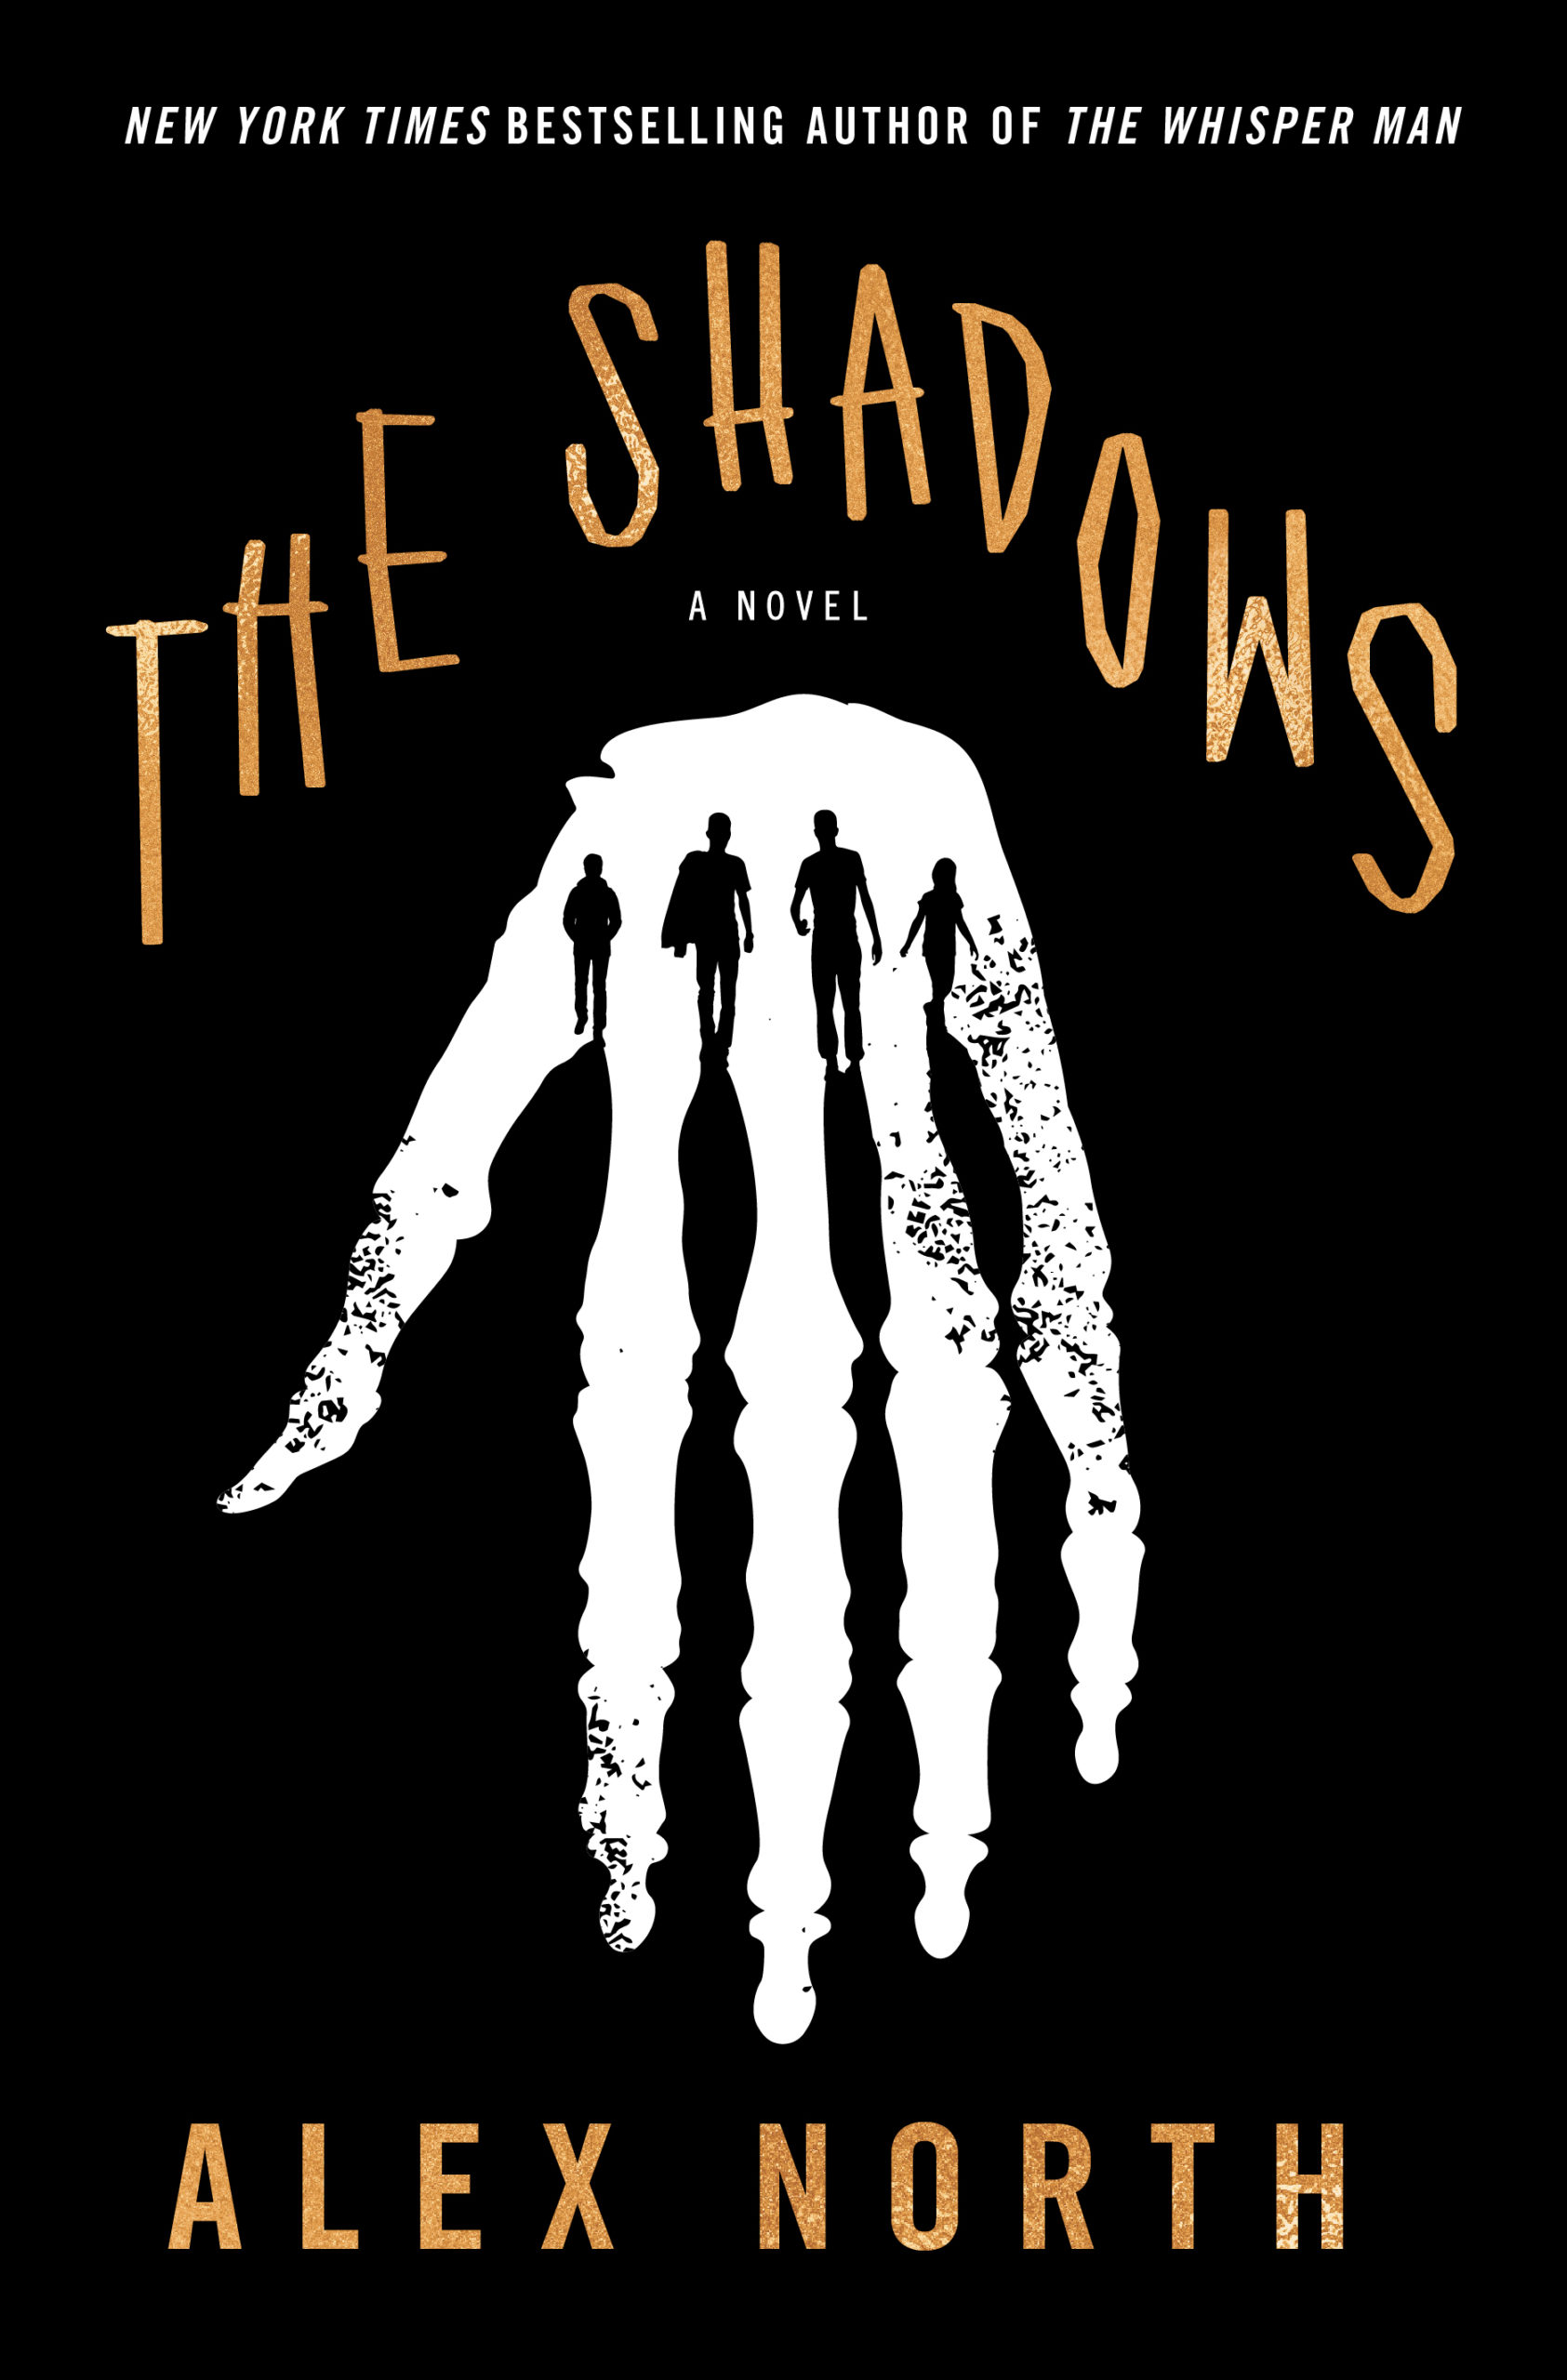 The Shadow A Novel